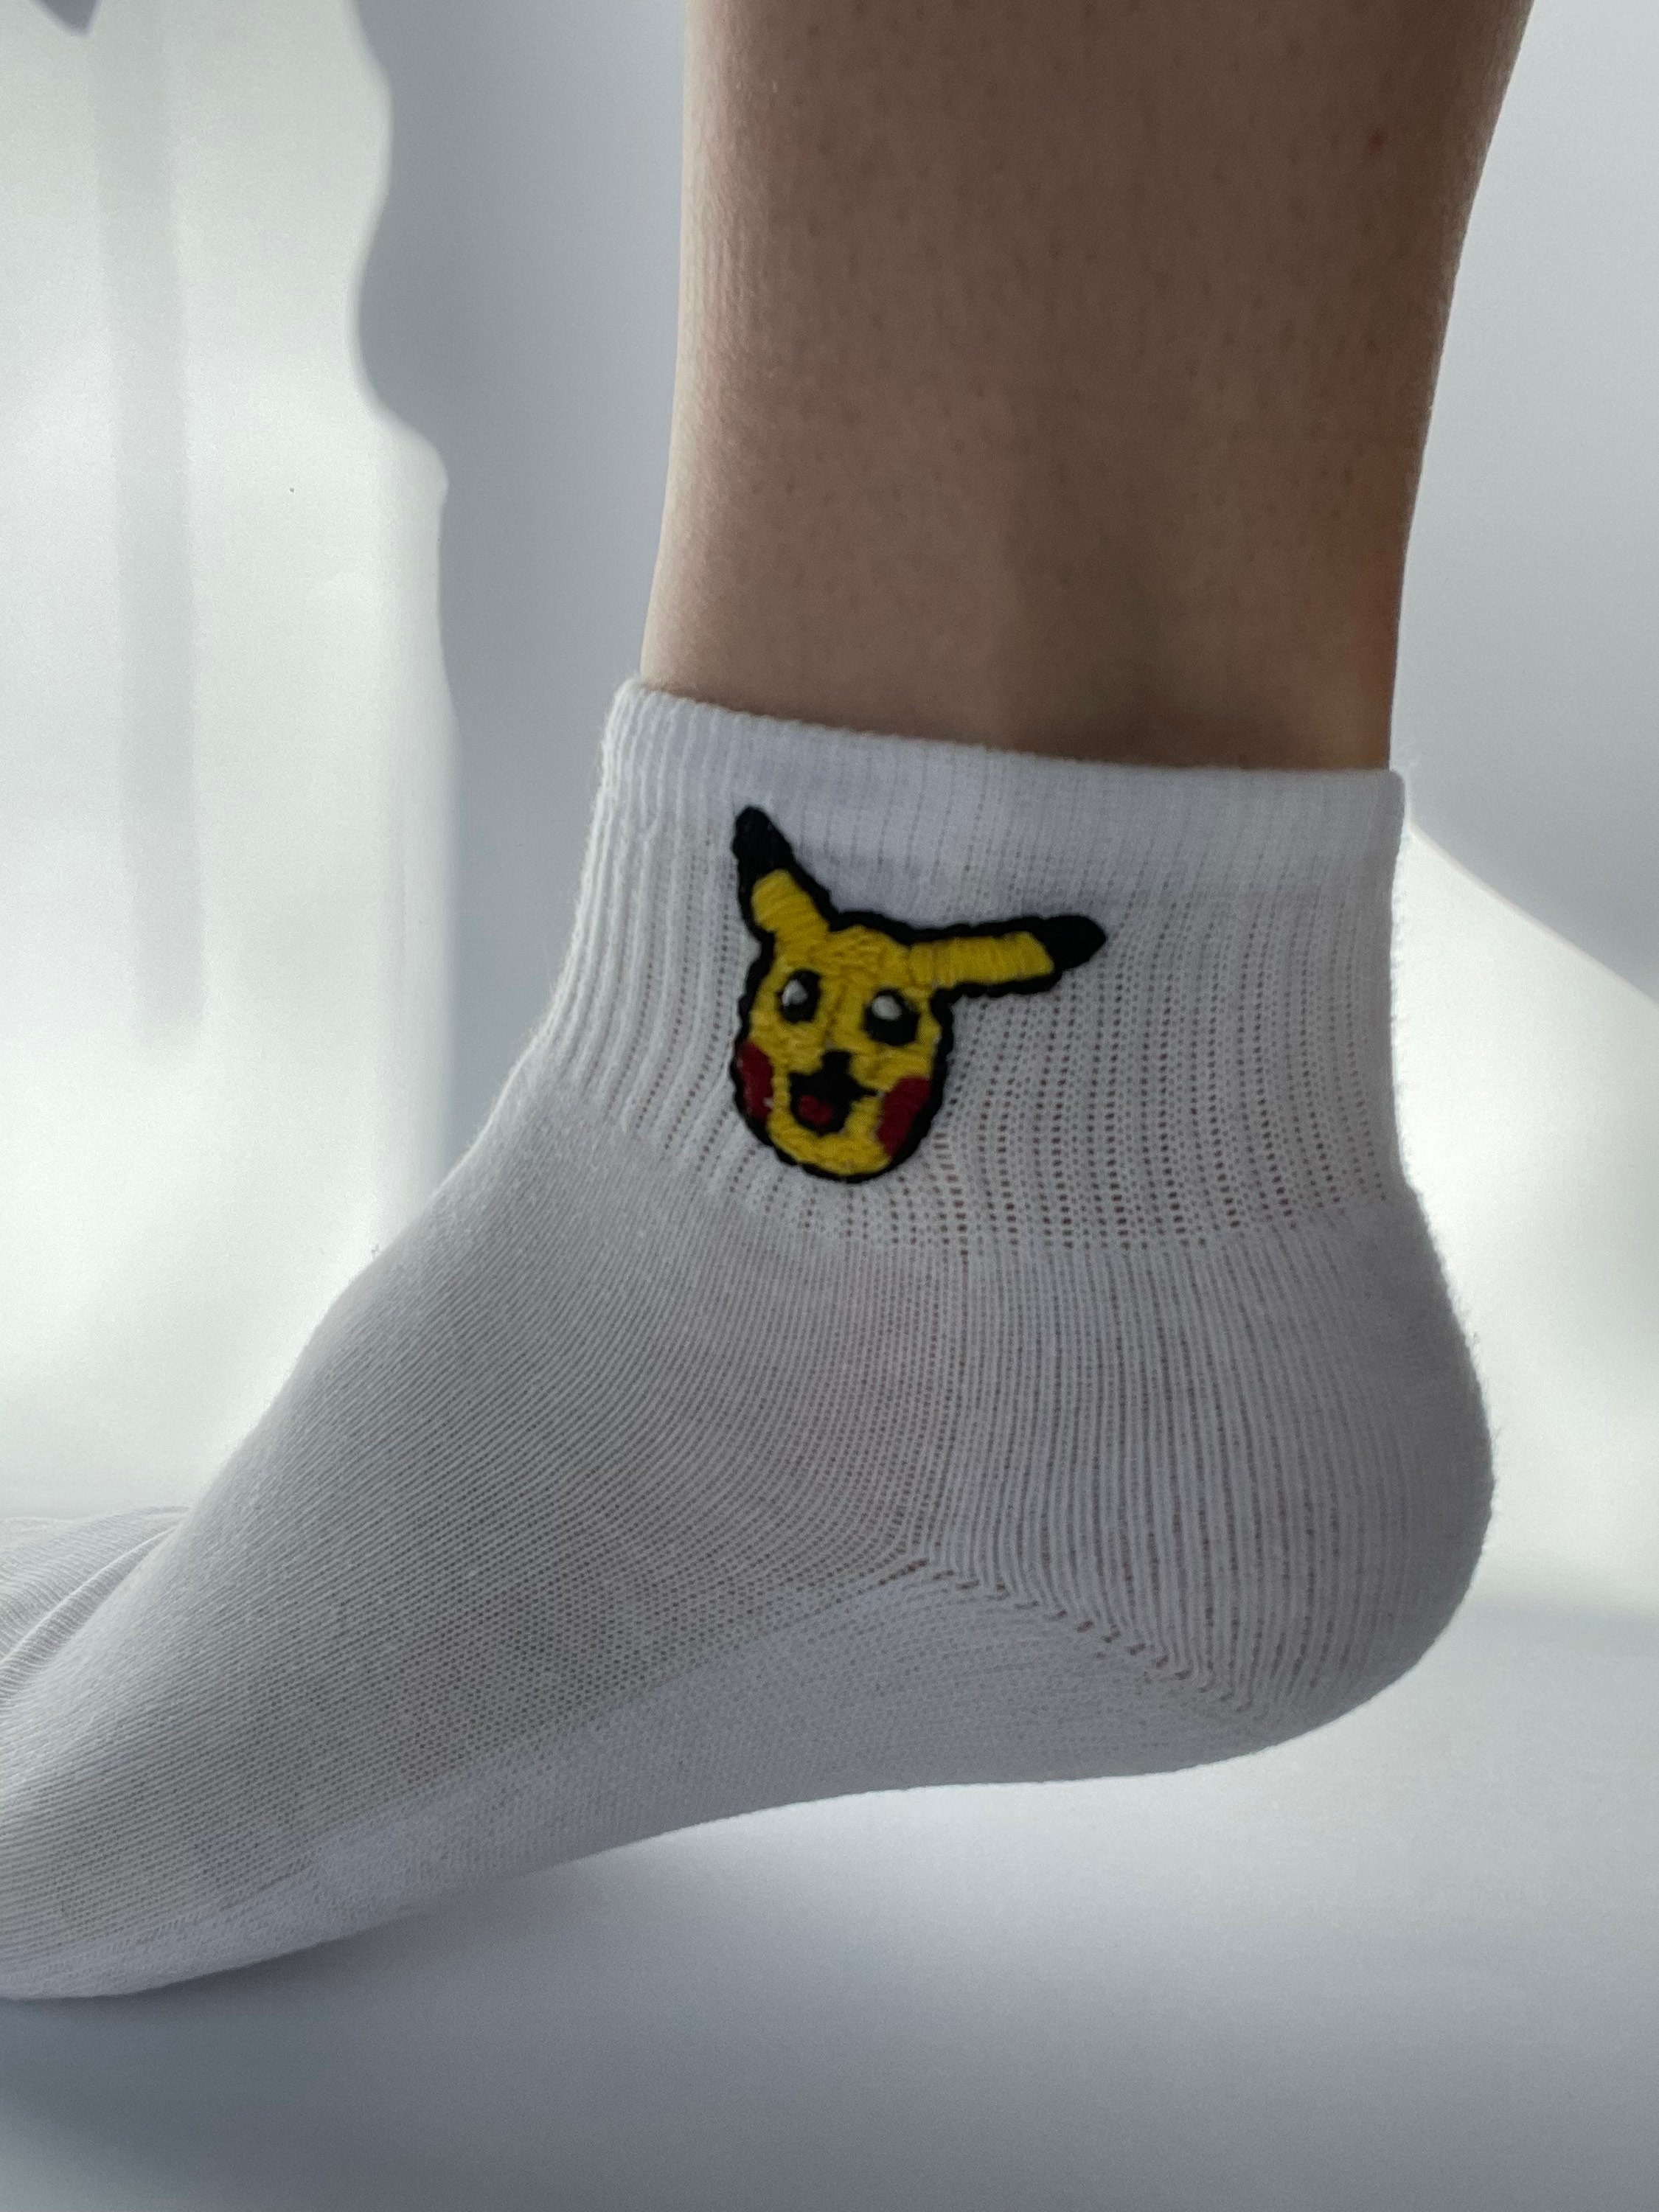 Boys S/M Fuzzy Babba Pokemon Pikachu Pokeball Slipper Socks Fits Shoe Size  8-13 86694519127 | eBay